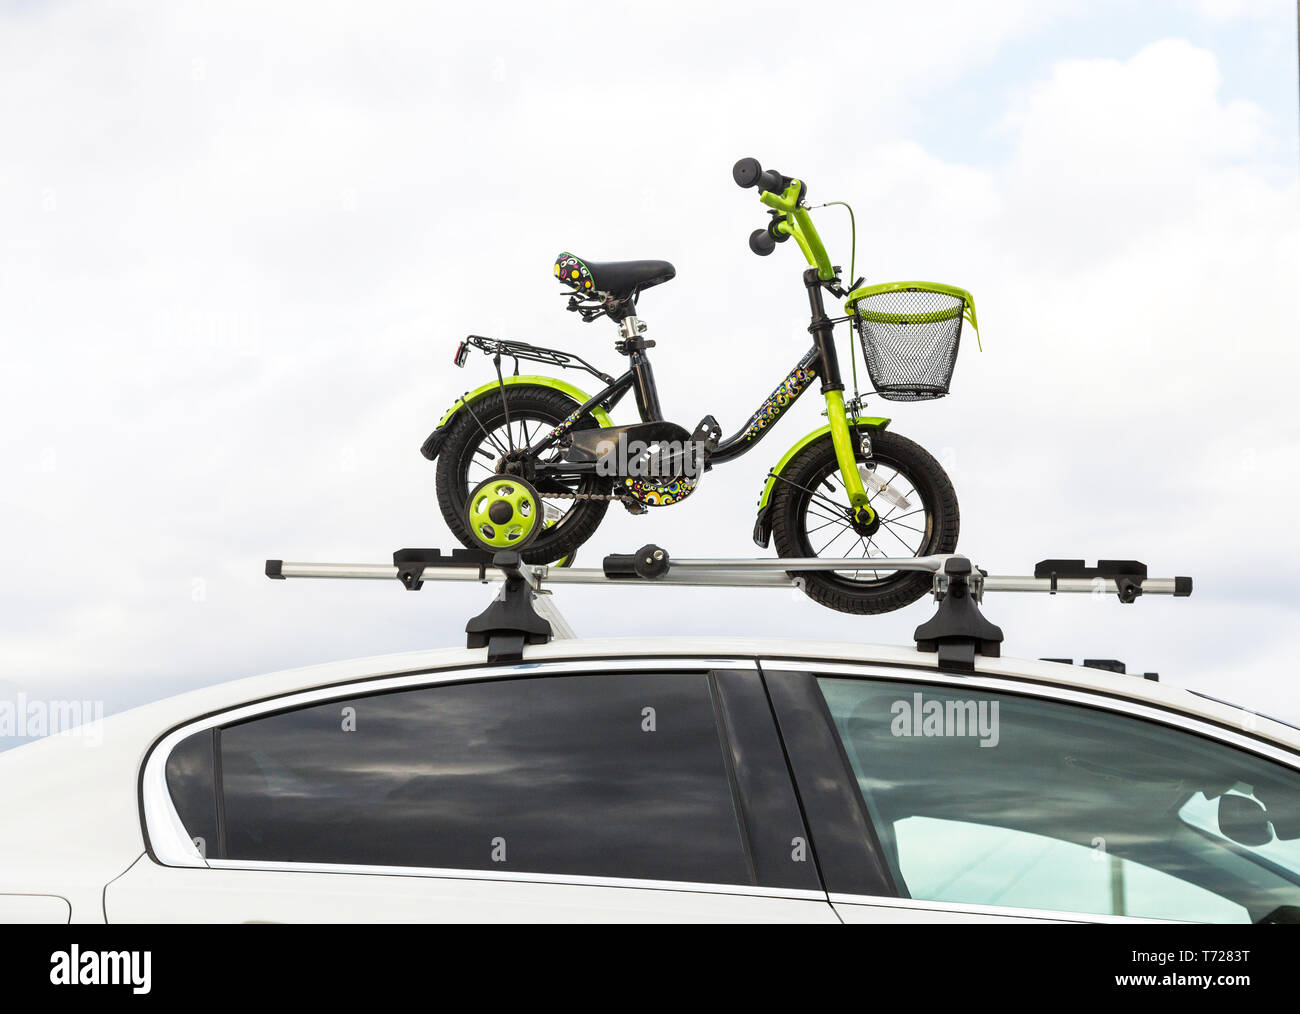 Fahrrad Transport - Kinder Fahrrad auf dem Dach eines Autos gegen den  Himmel in eine spezielle Halterung für den Radsport. Die Entscheidung große  zu transportieren Stockfotografie - Alamy